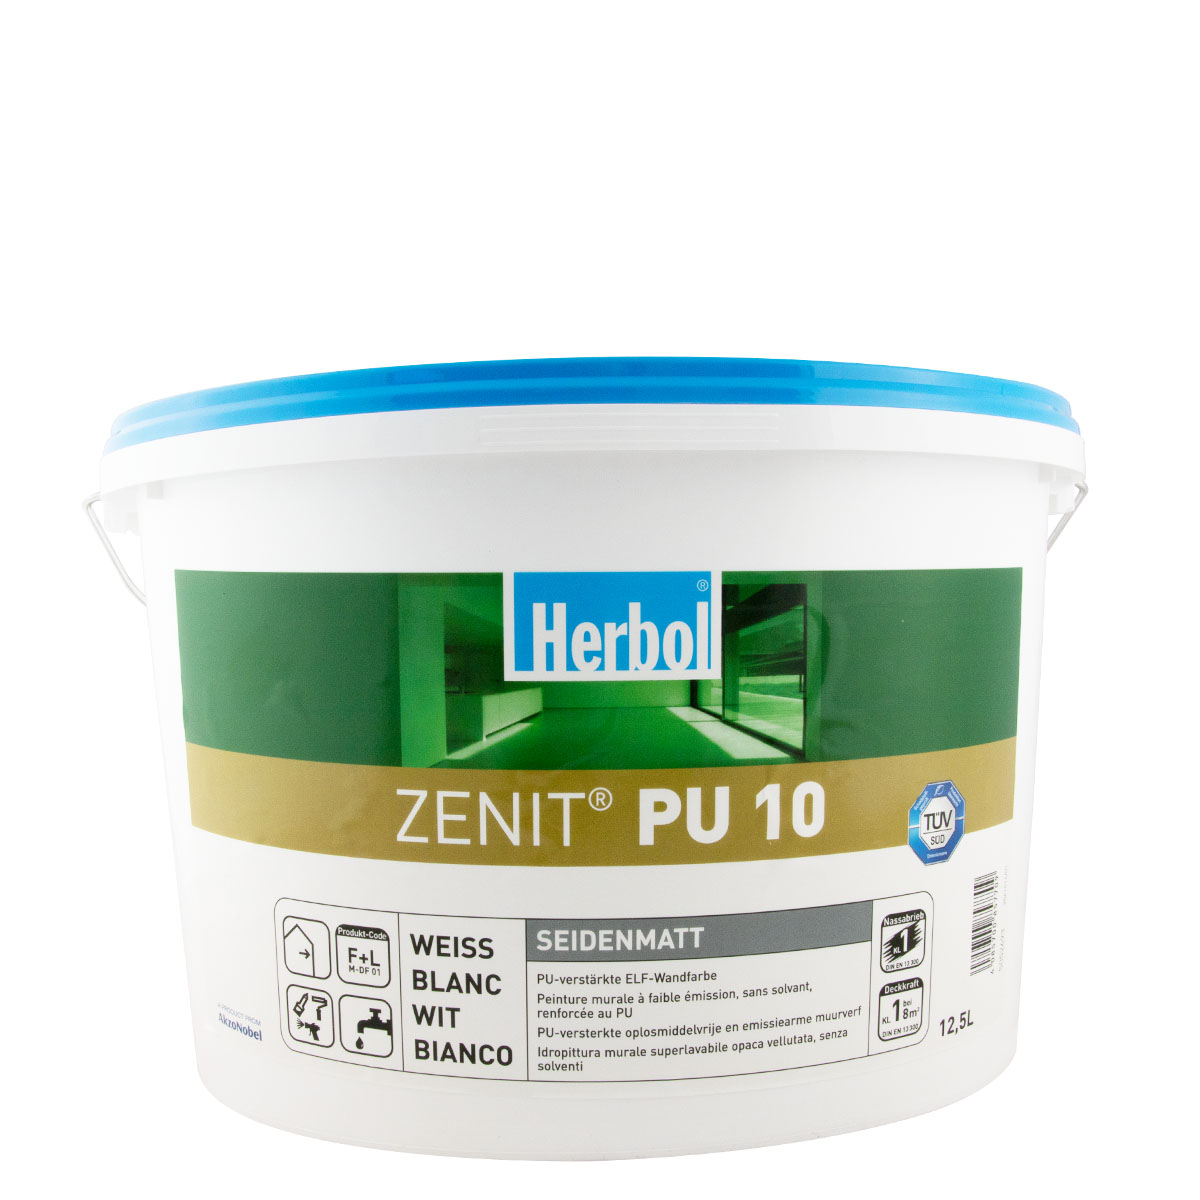 Herbol Zenit PU 10 weiss 12,5L, desinfektionsmittelbeständig